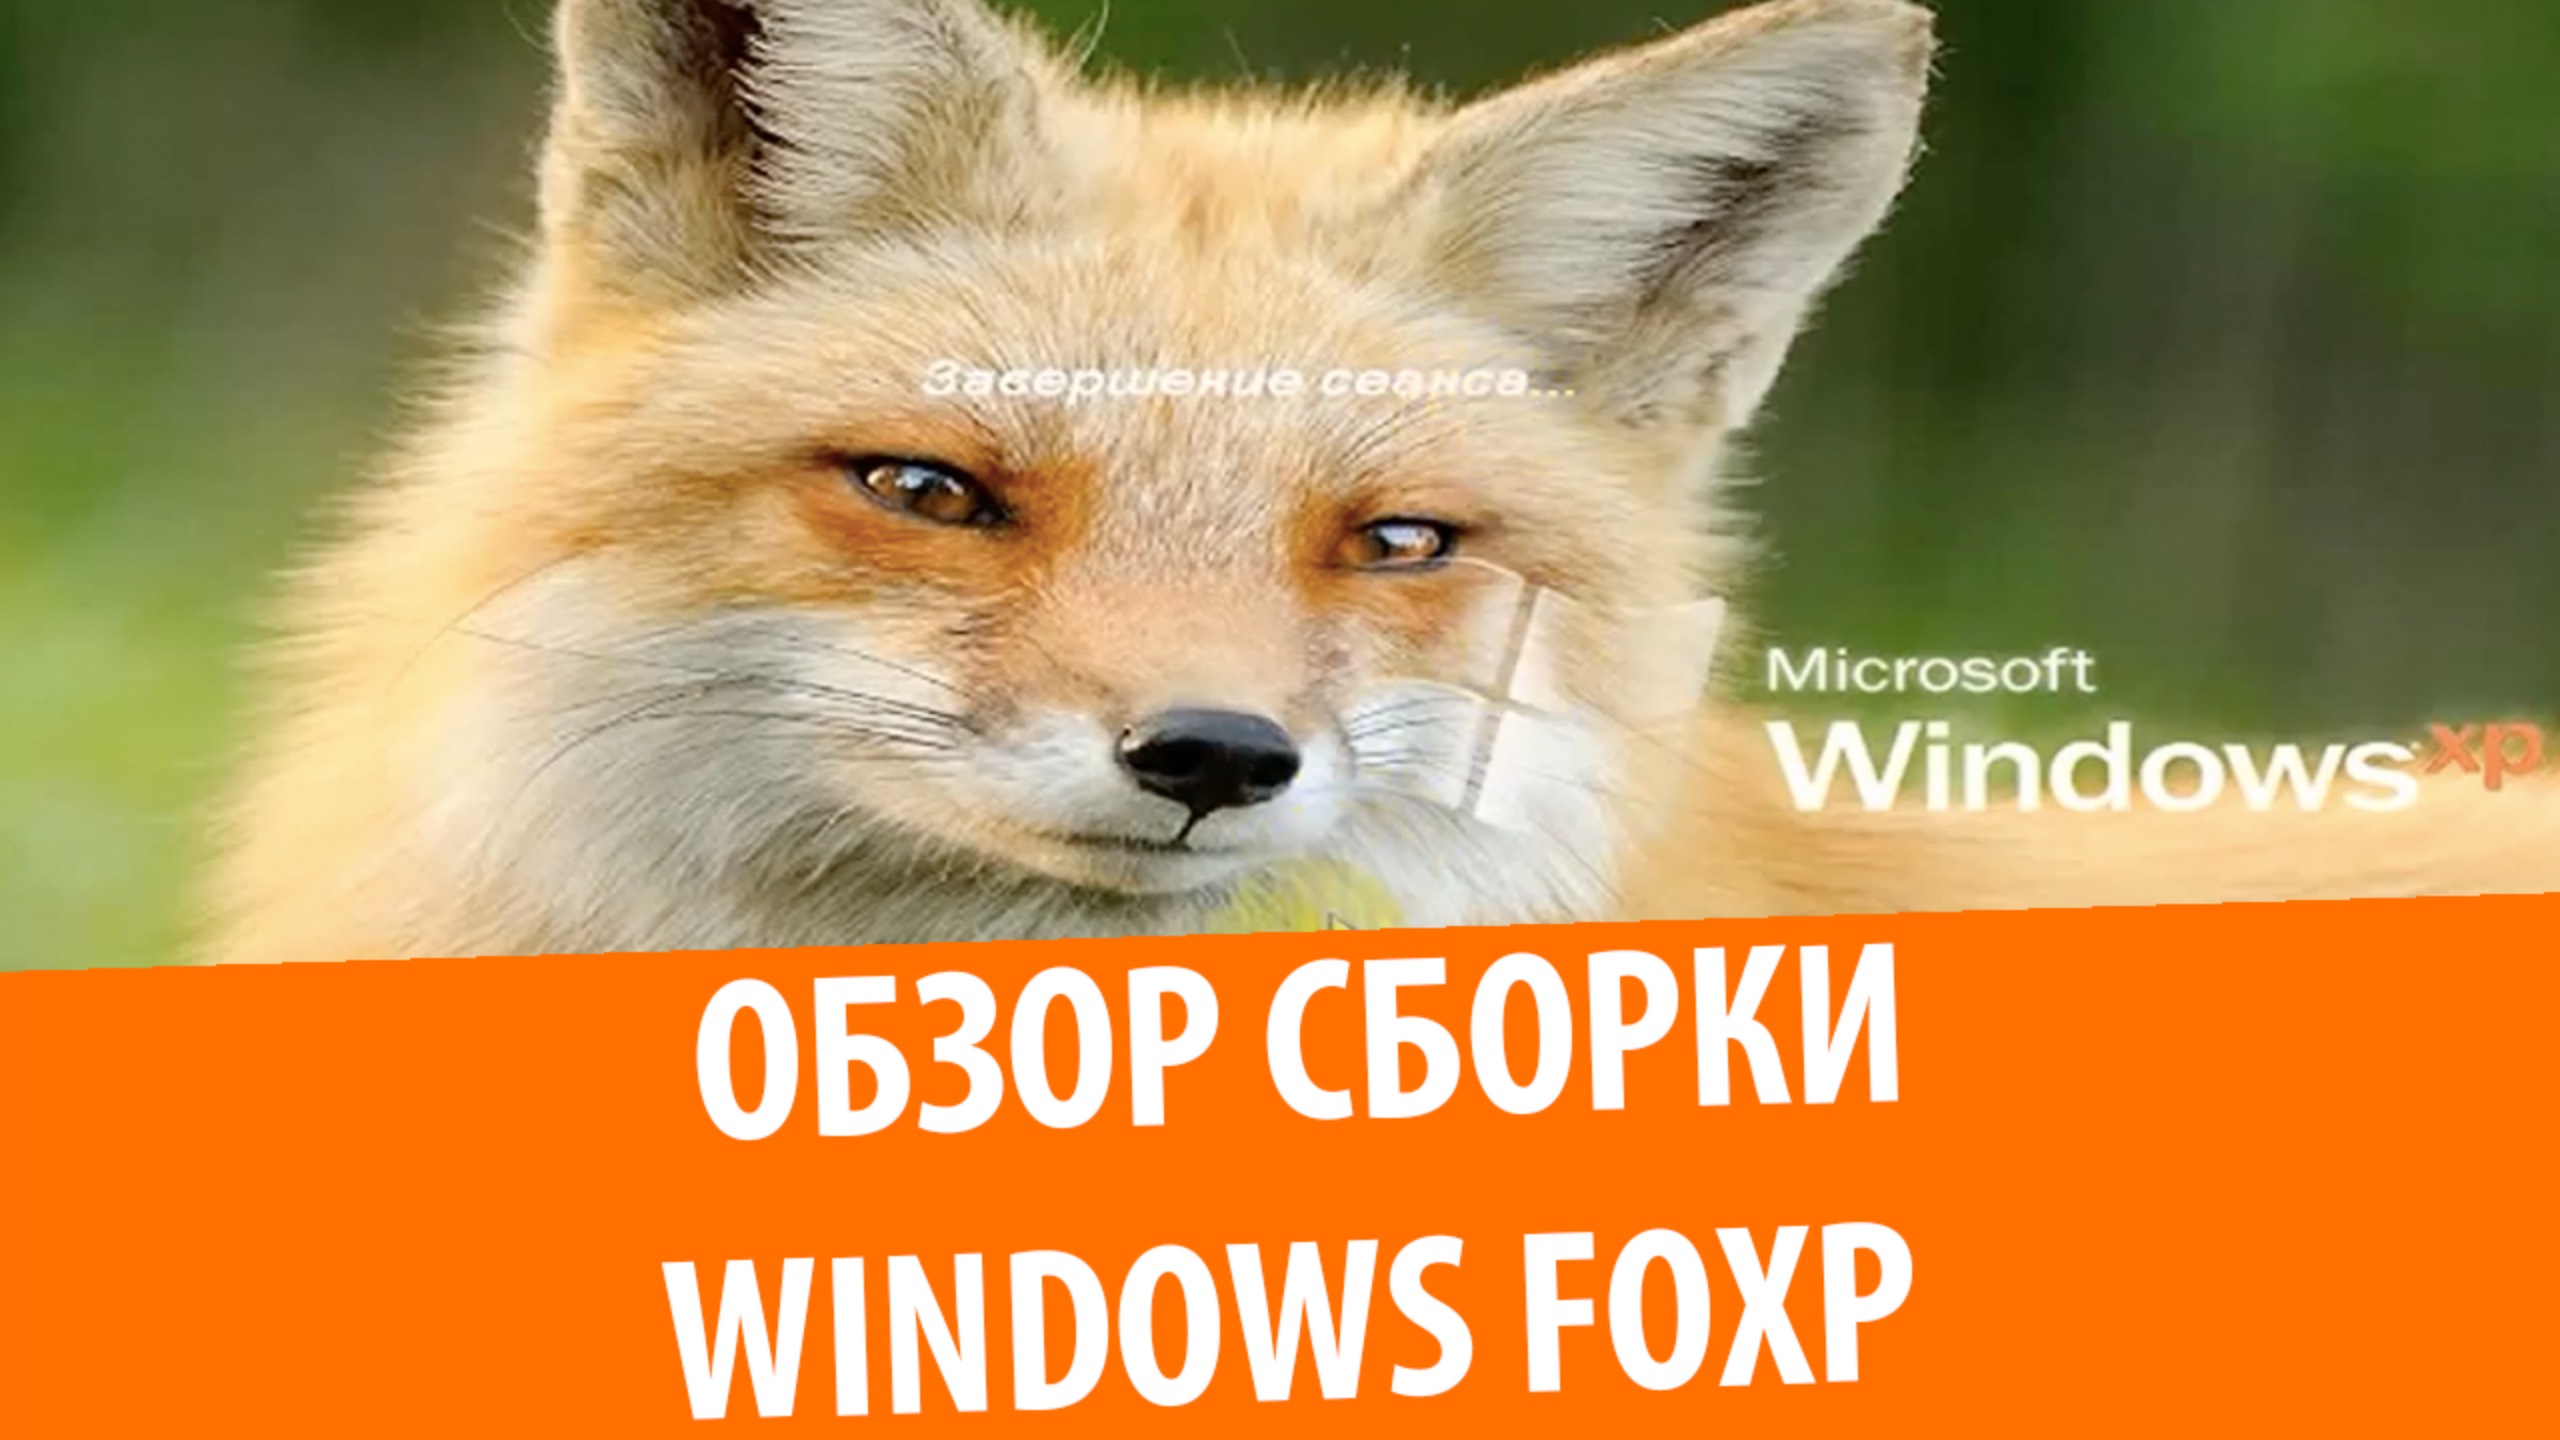 Обзор сборки Windows FoXP